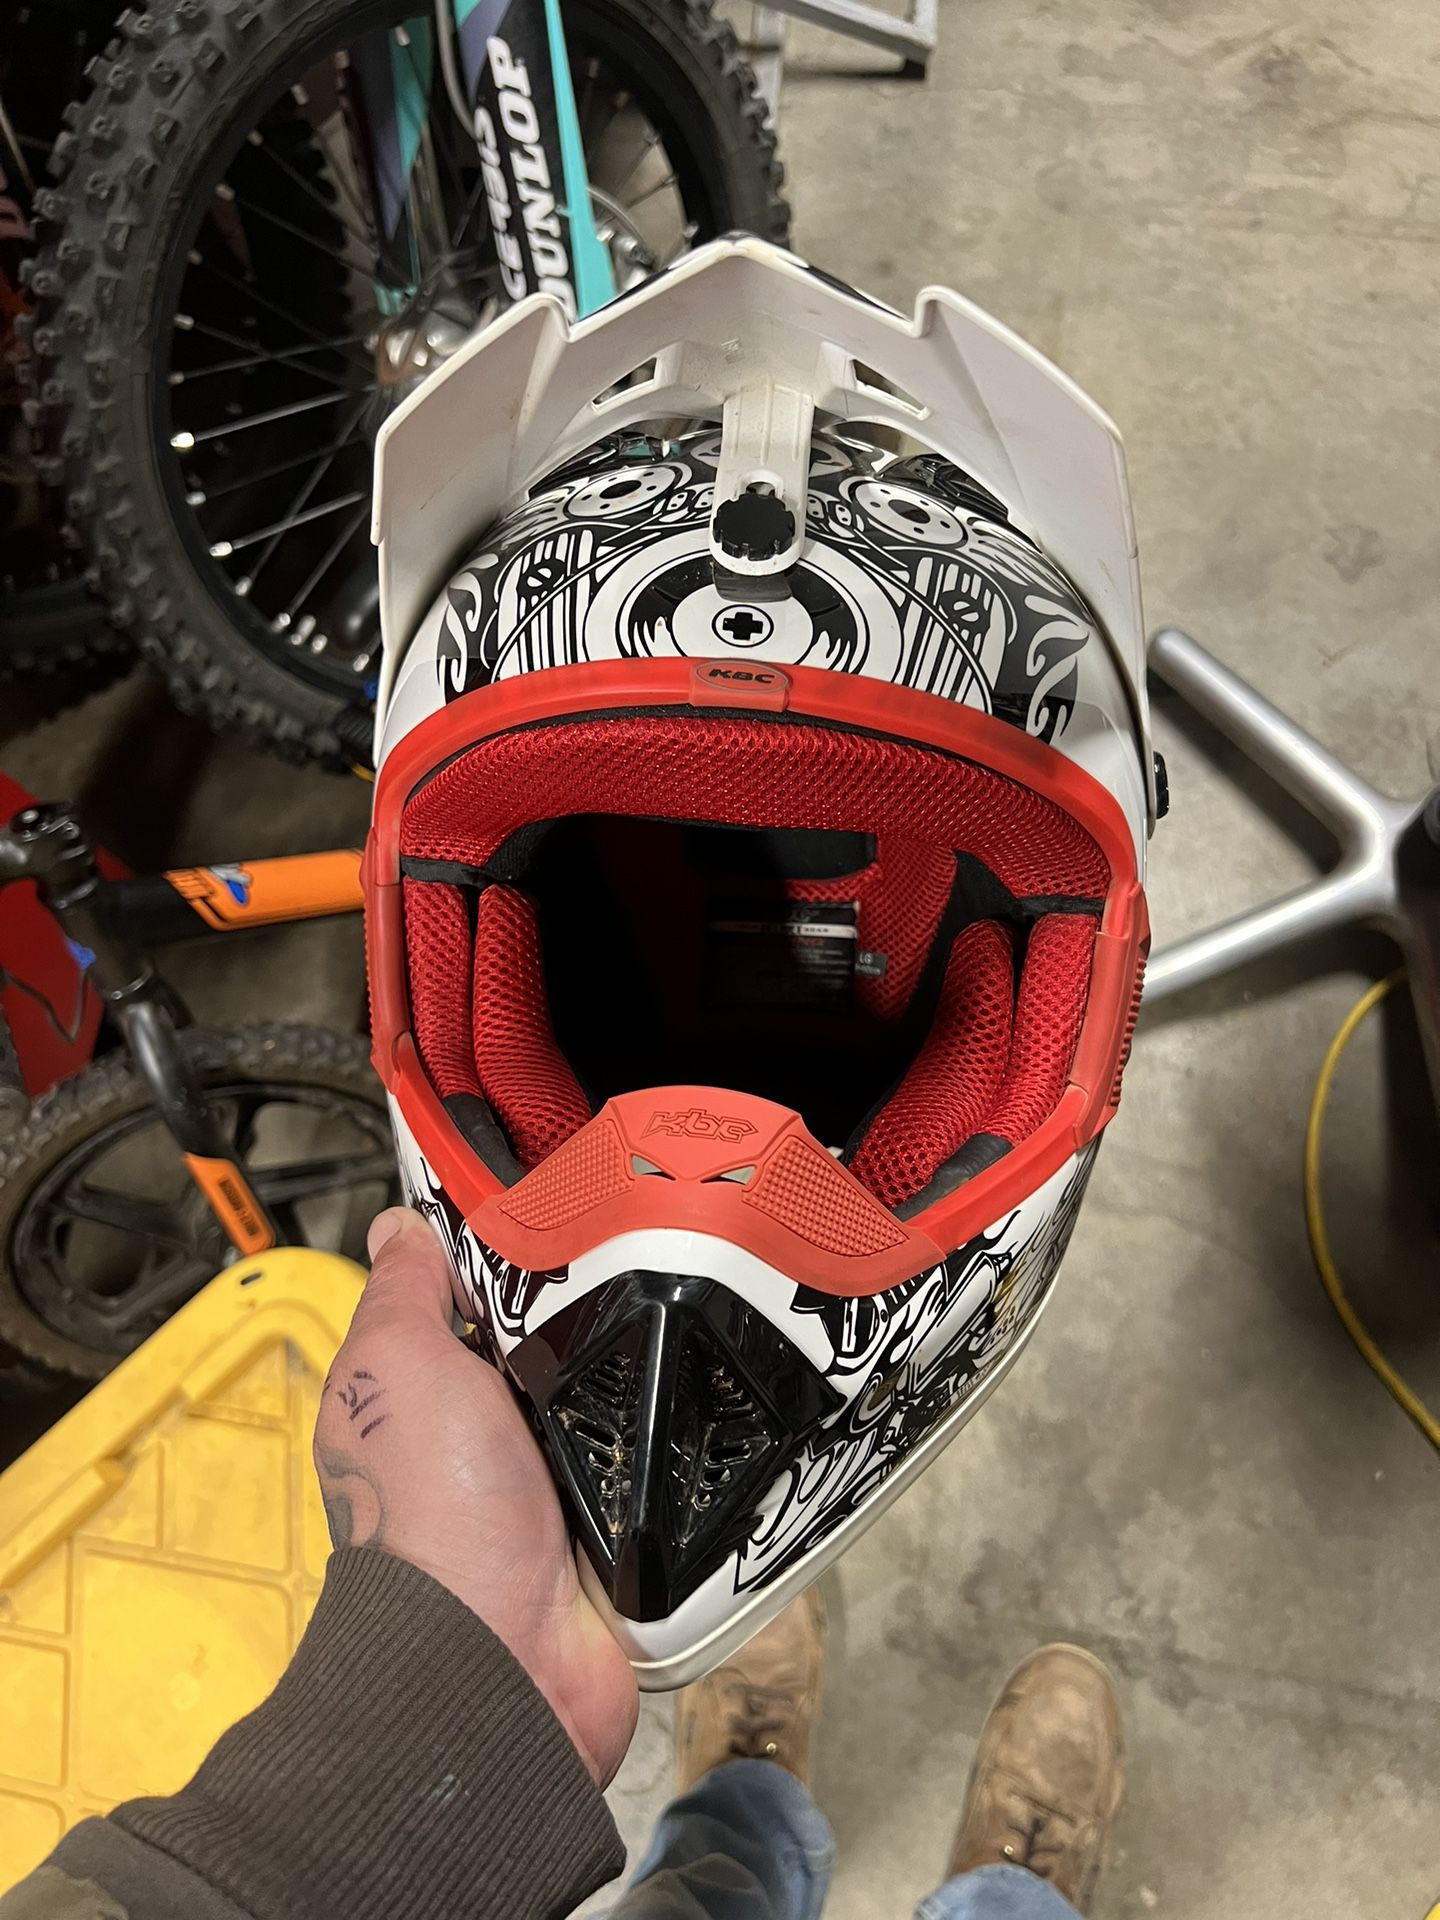 Kcb Dirt Bike Helmet 